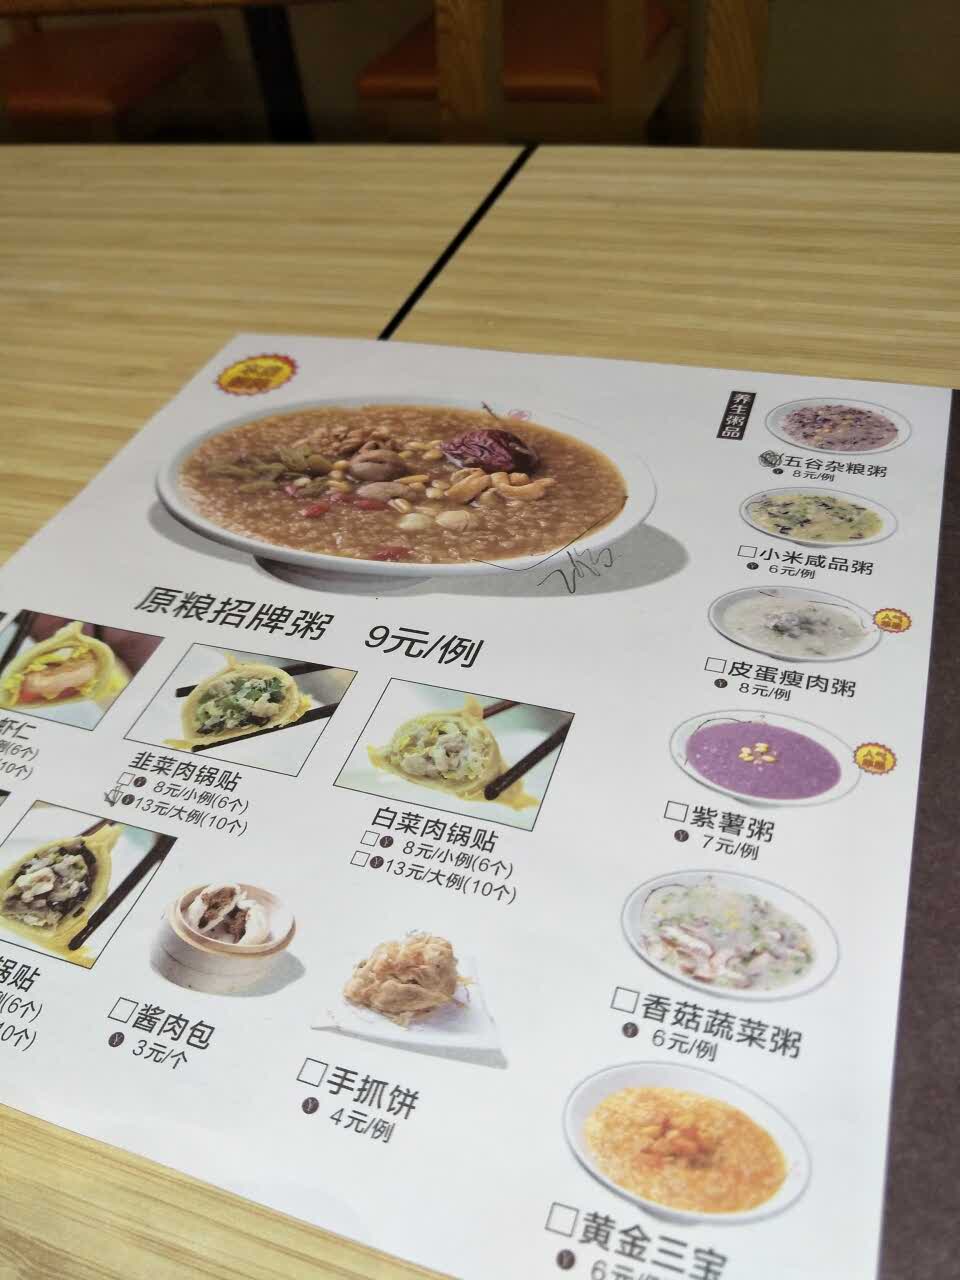 超意兴快餐菜单价目表图片